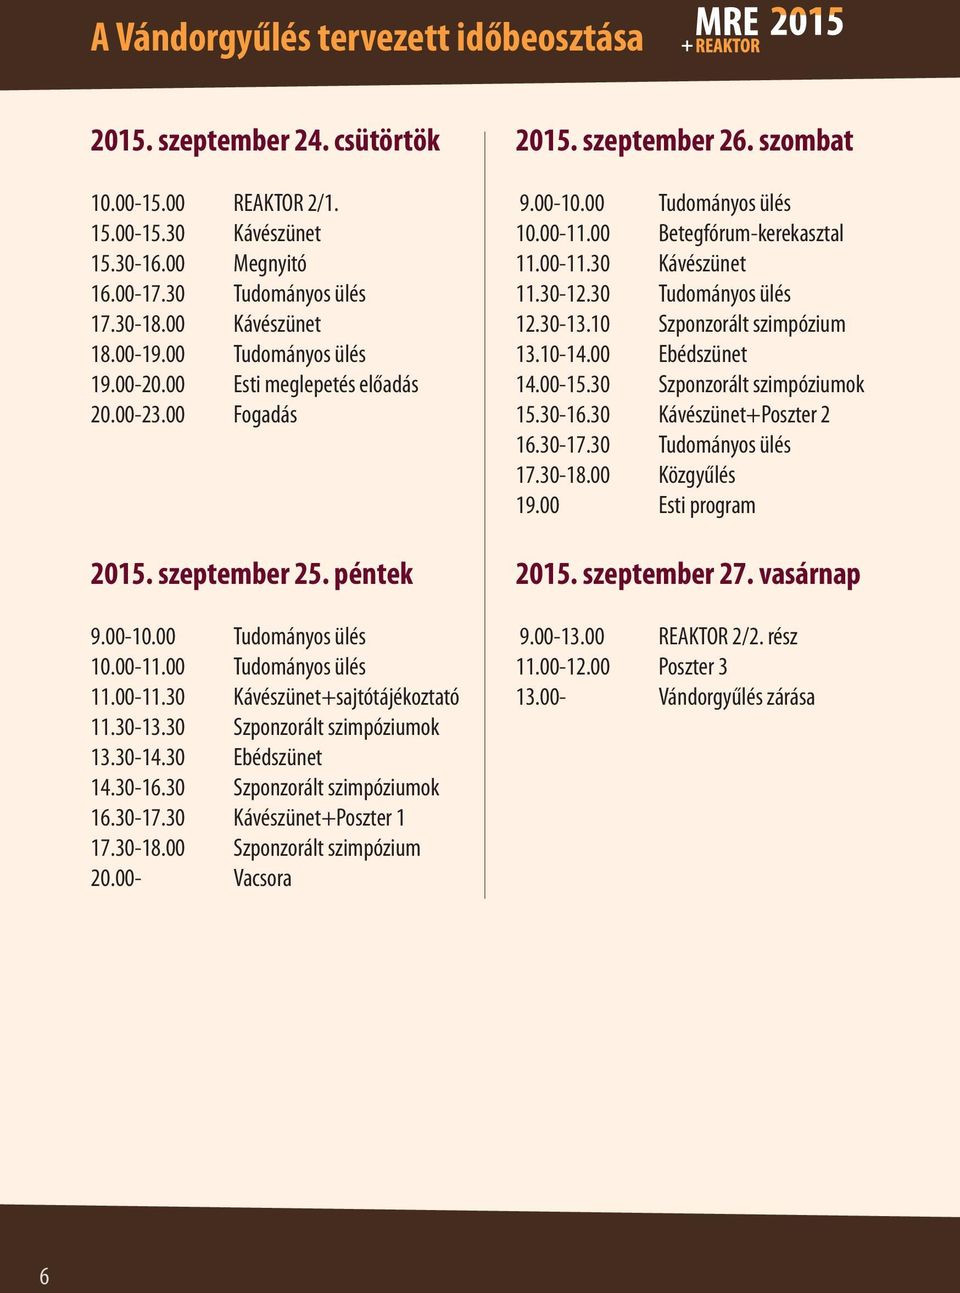 30-13.30 Szponzorált szimpóziumok 13.30-14.30 Ebédszünet 14.30-16.30 Szponzorált szimpóziumok 16.30-17.30 Kávészünet+Poszter 1 17.30-18.00 Szponzorált szimpózium 20.00- Vacsora 2015. szeptember 26.